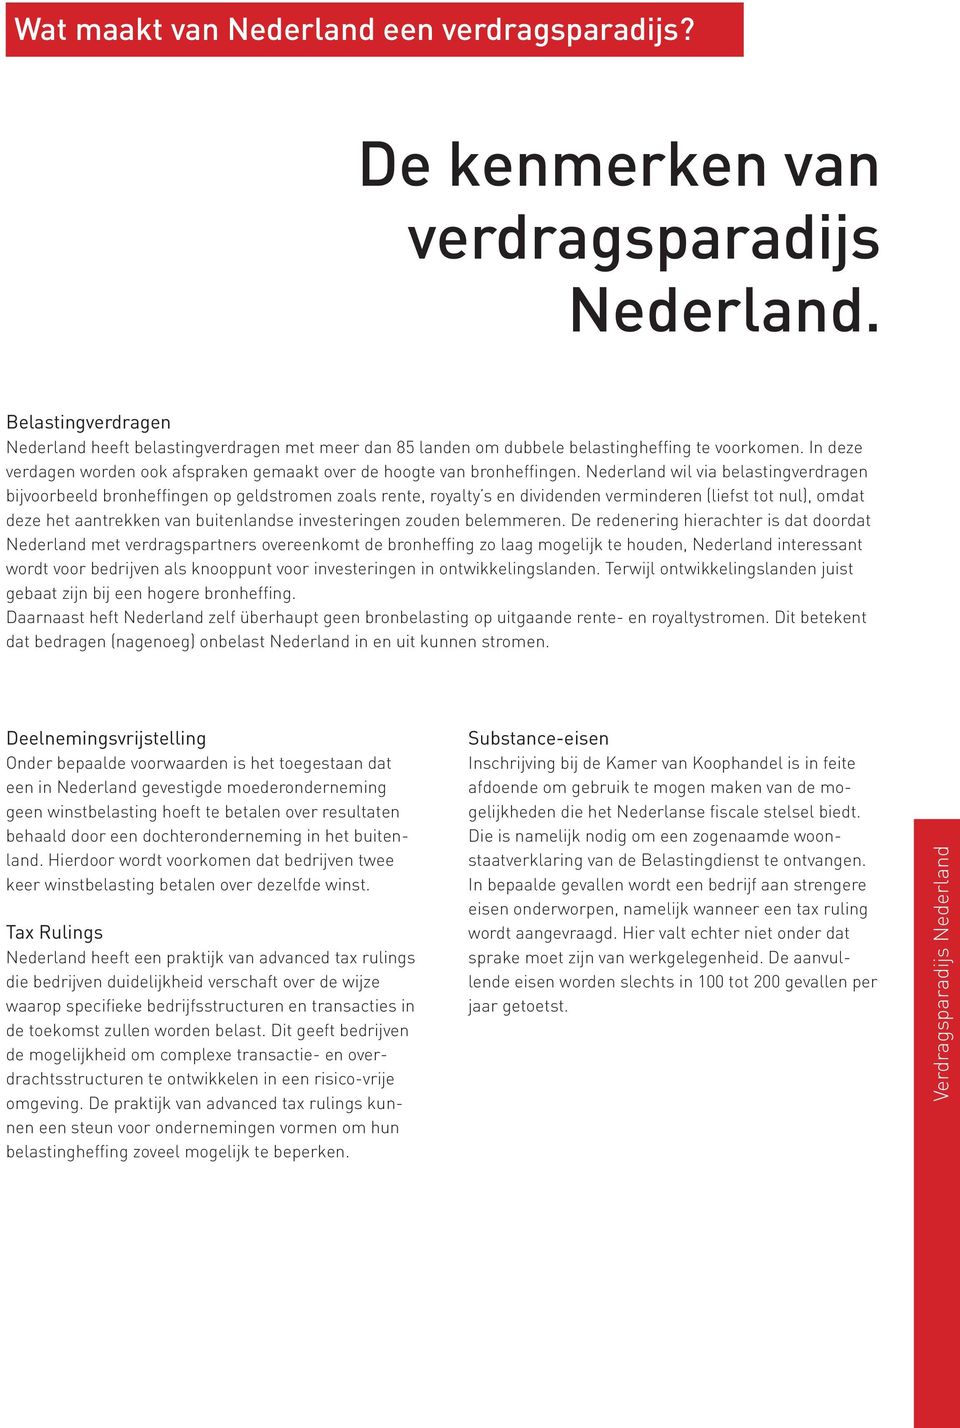 Nederland wil via belastingverdragen bijvoorbeeld bronheffingen op geldstromen zoals rente, royalty s en dividenden verminderen (liefst tot nul), omdat deze het aantrekken van buitenlandse